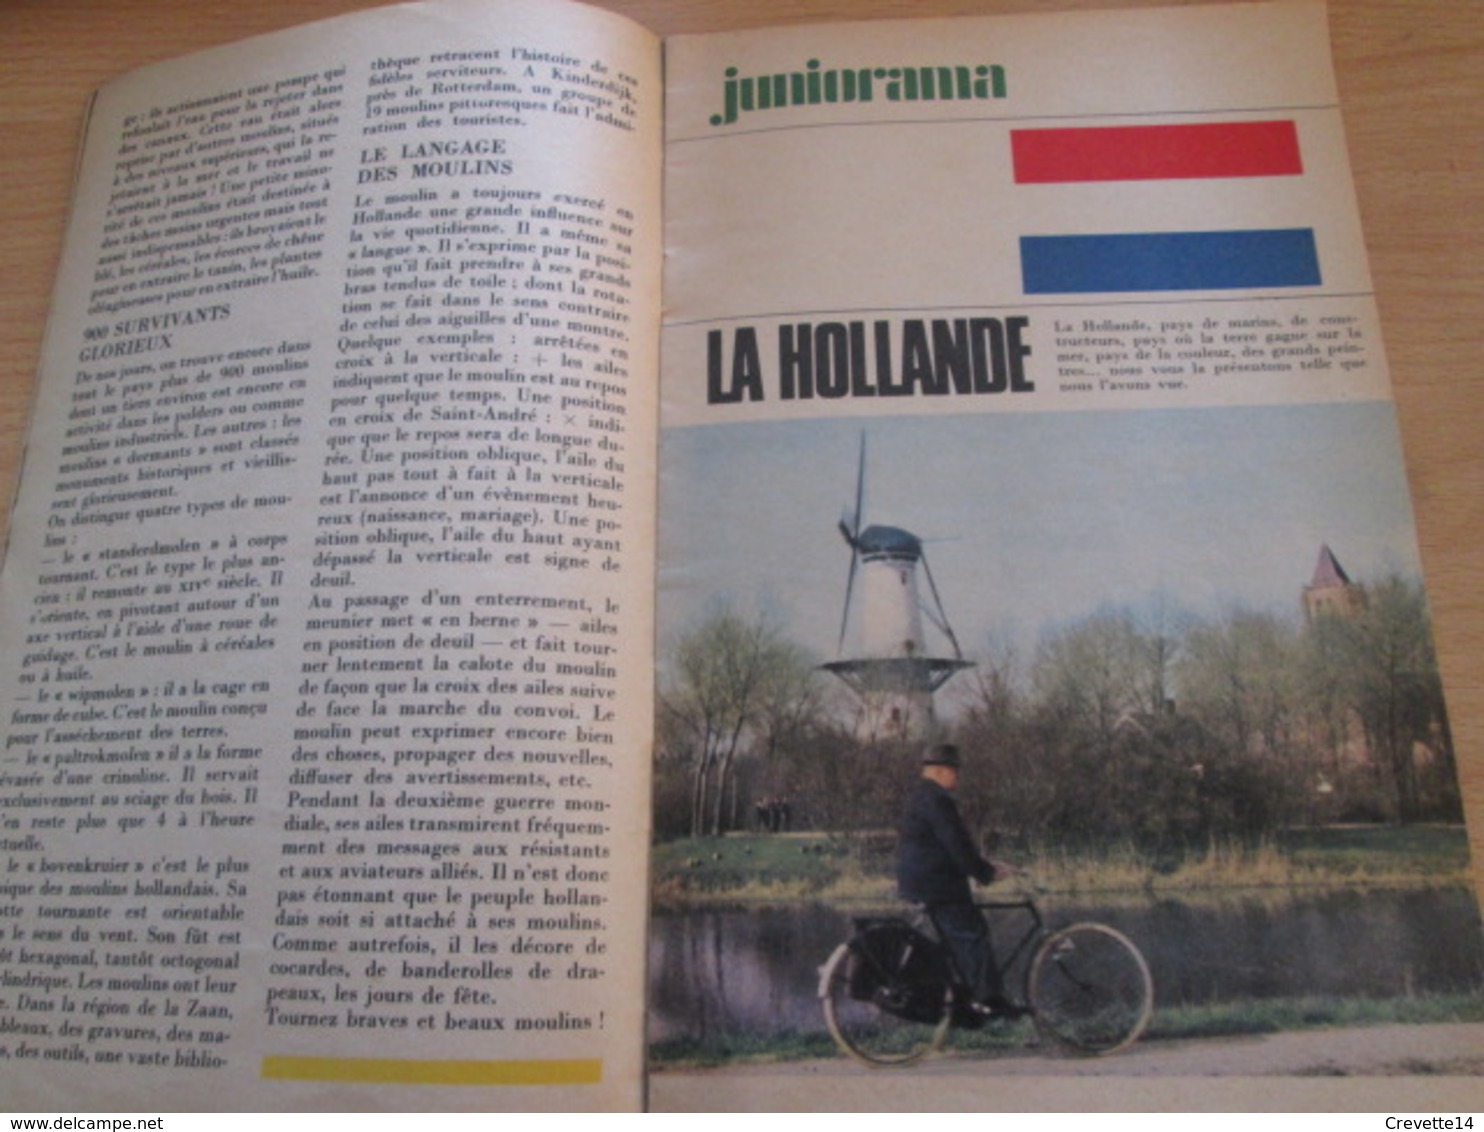 Petite revue publicitaire A5 année 1966 n°3 TOTAL JOURNAL incluant BD inédité de JIJE GIRAUD vu à 40€ chez I-B